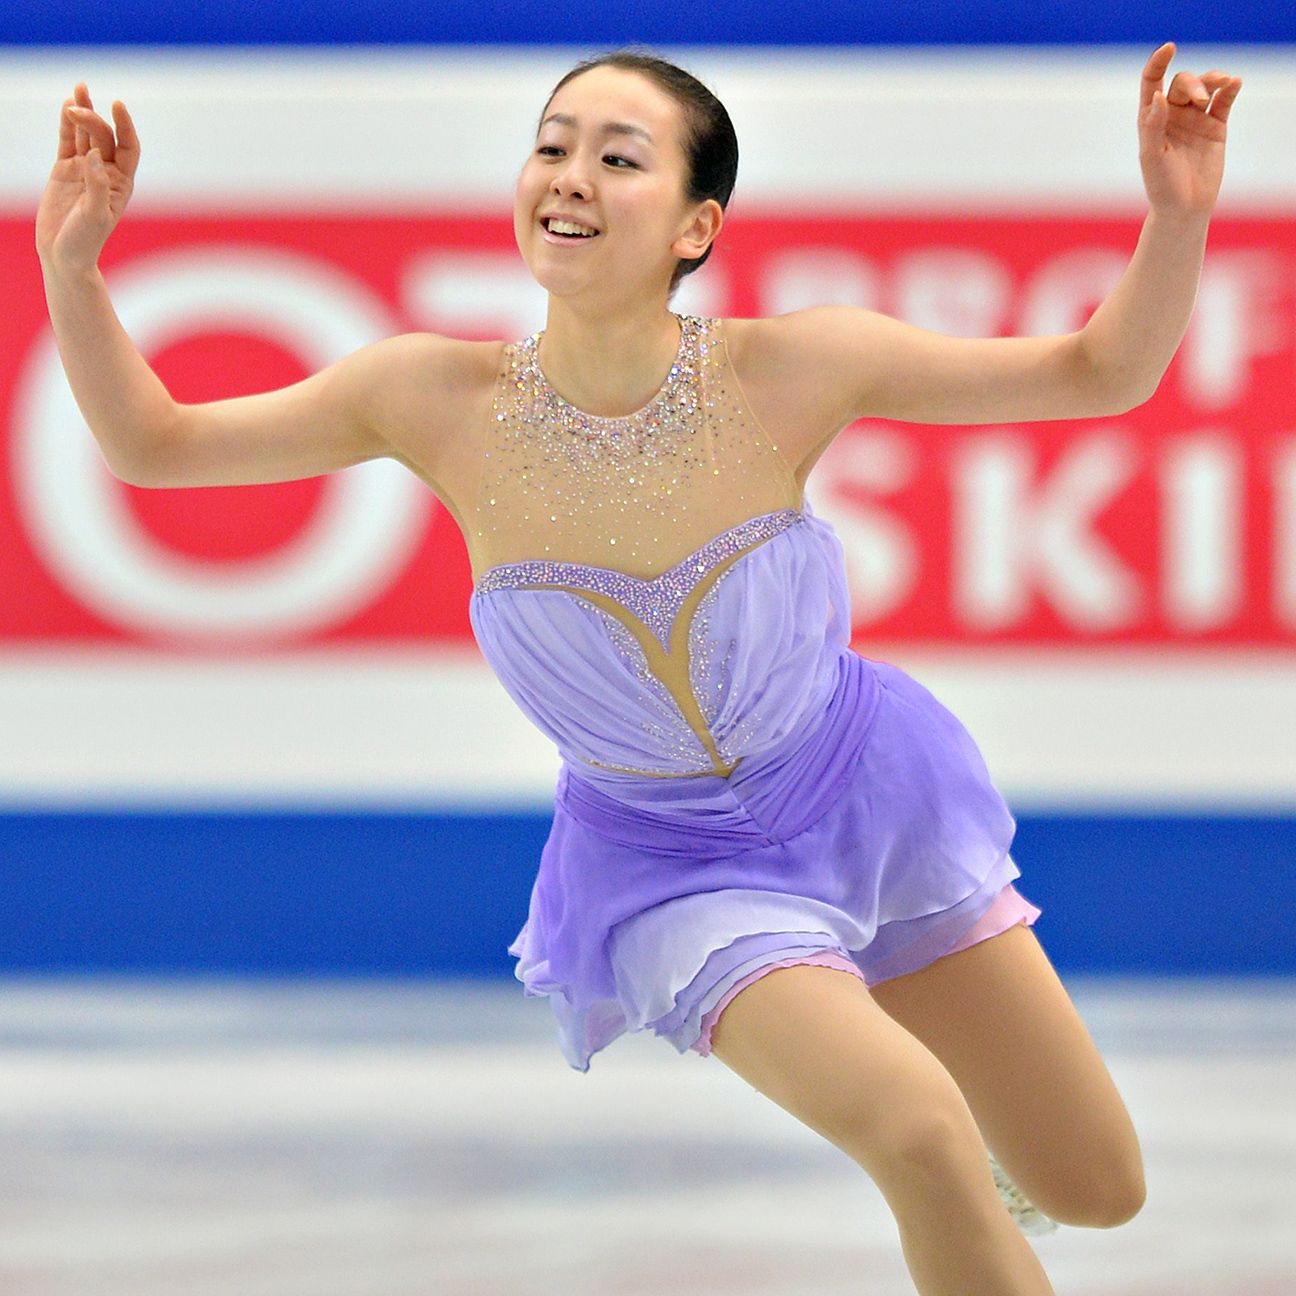 Mao Asada sets world record at Figure Skating World Championships